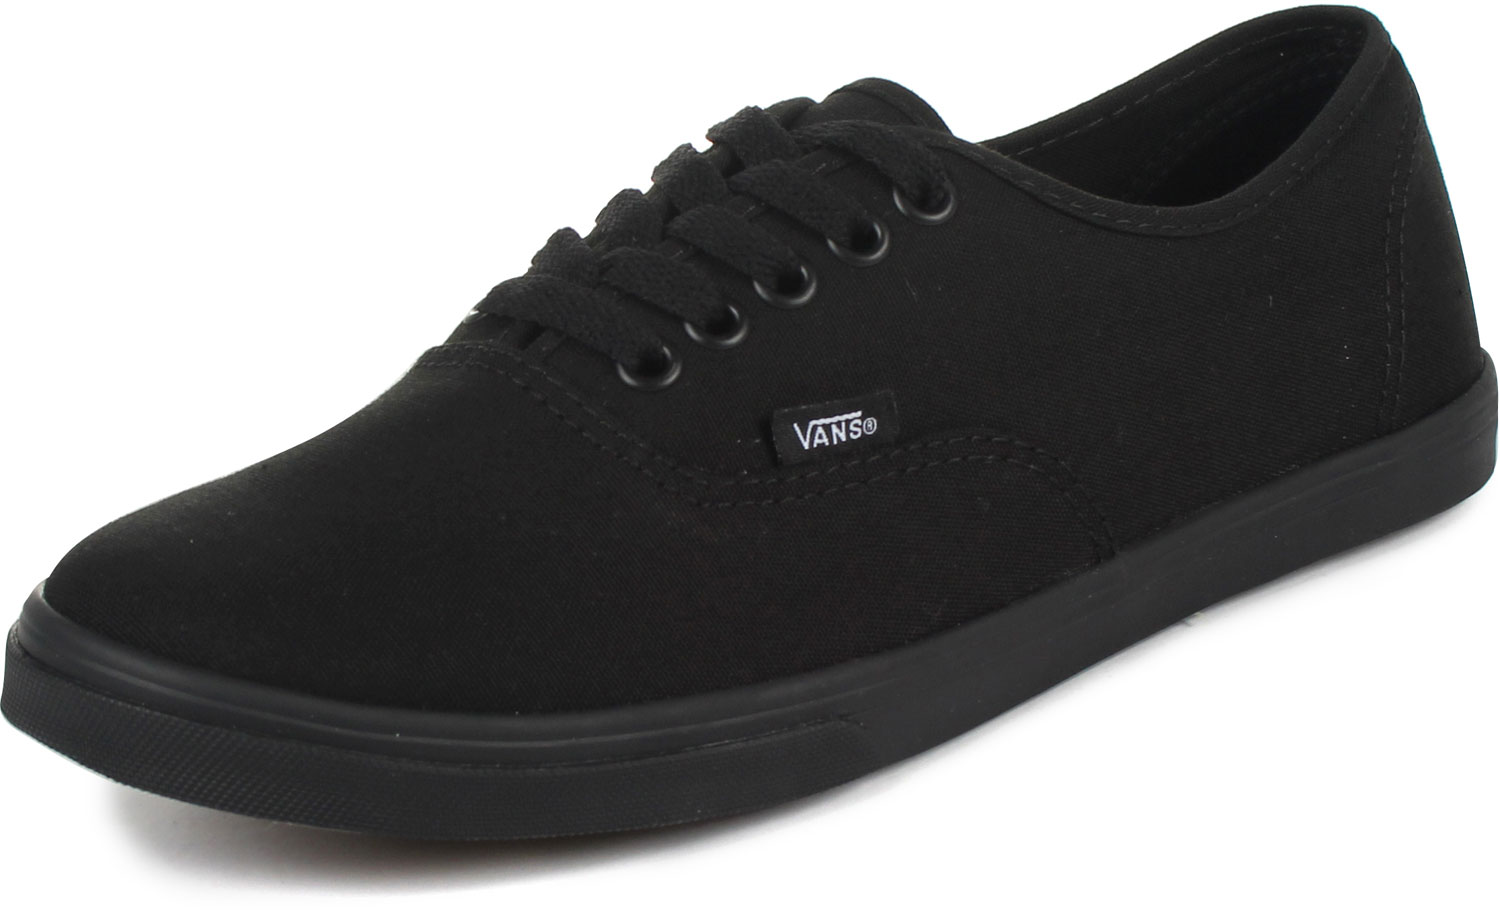 Vans - U Authentic Lo Pro Shoes In Black/Black